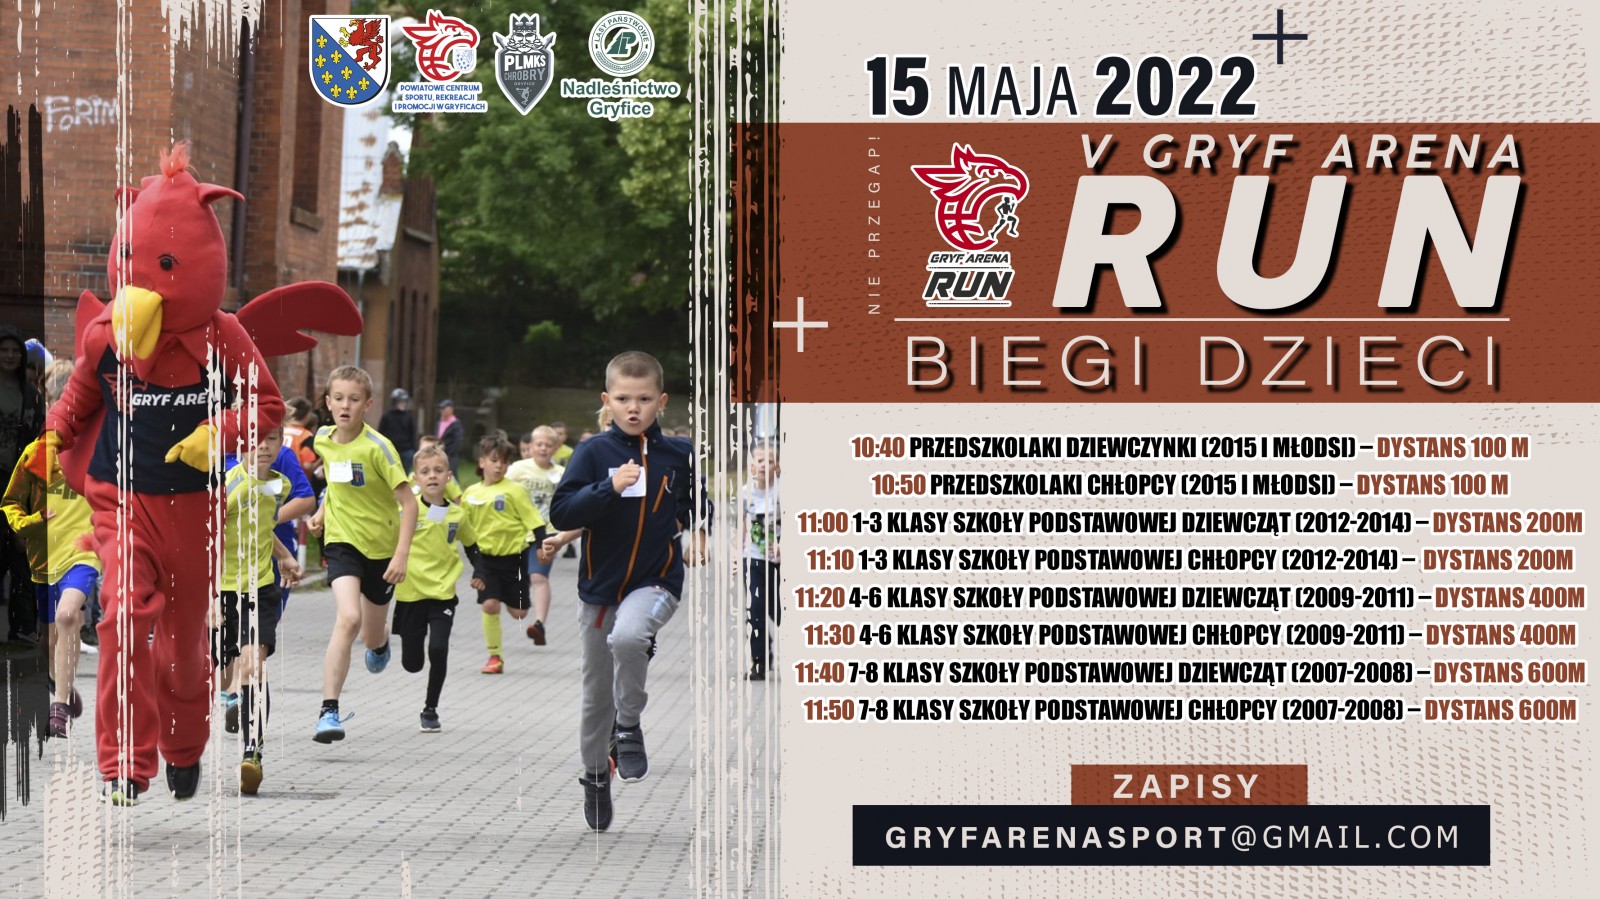 GRYF ARENA RUN już 15 maja 2022 r przy hali Gryf Arena w Gryficach